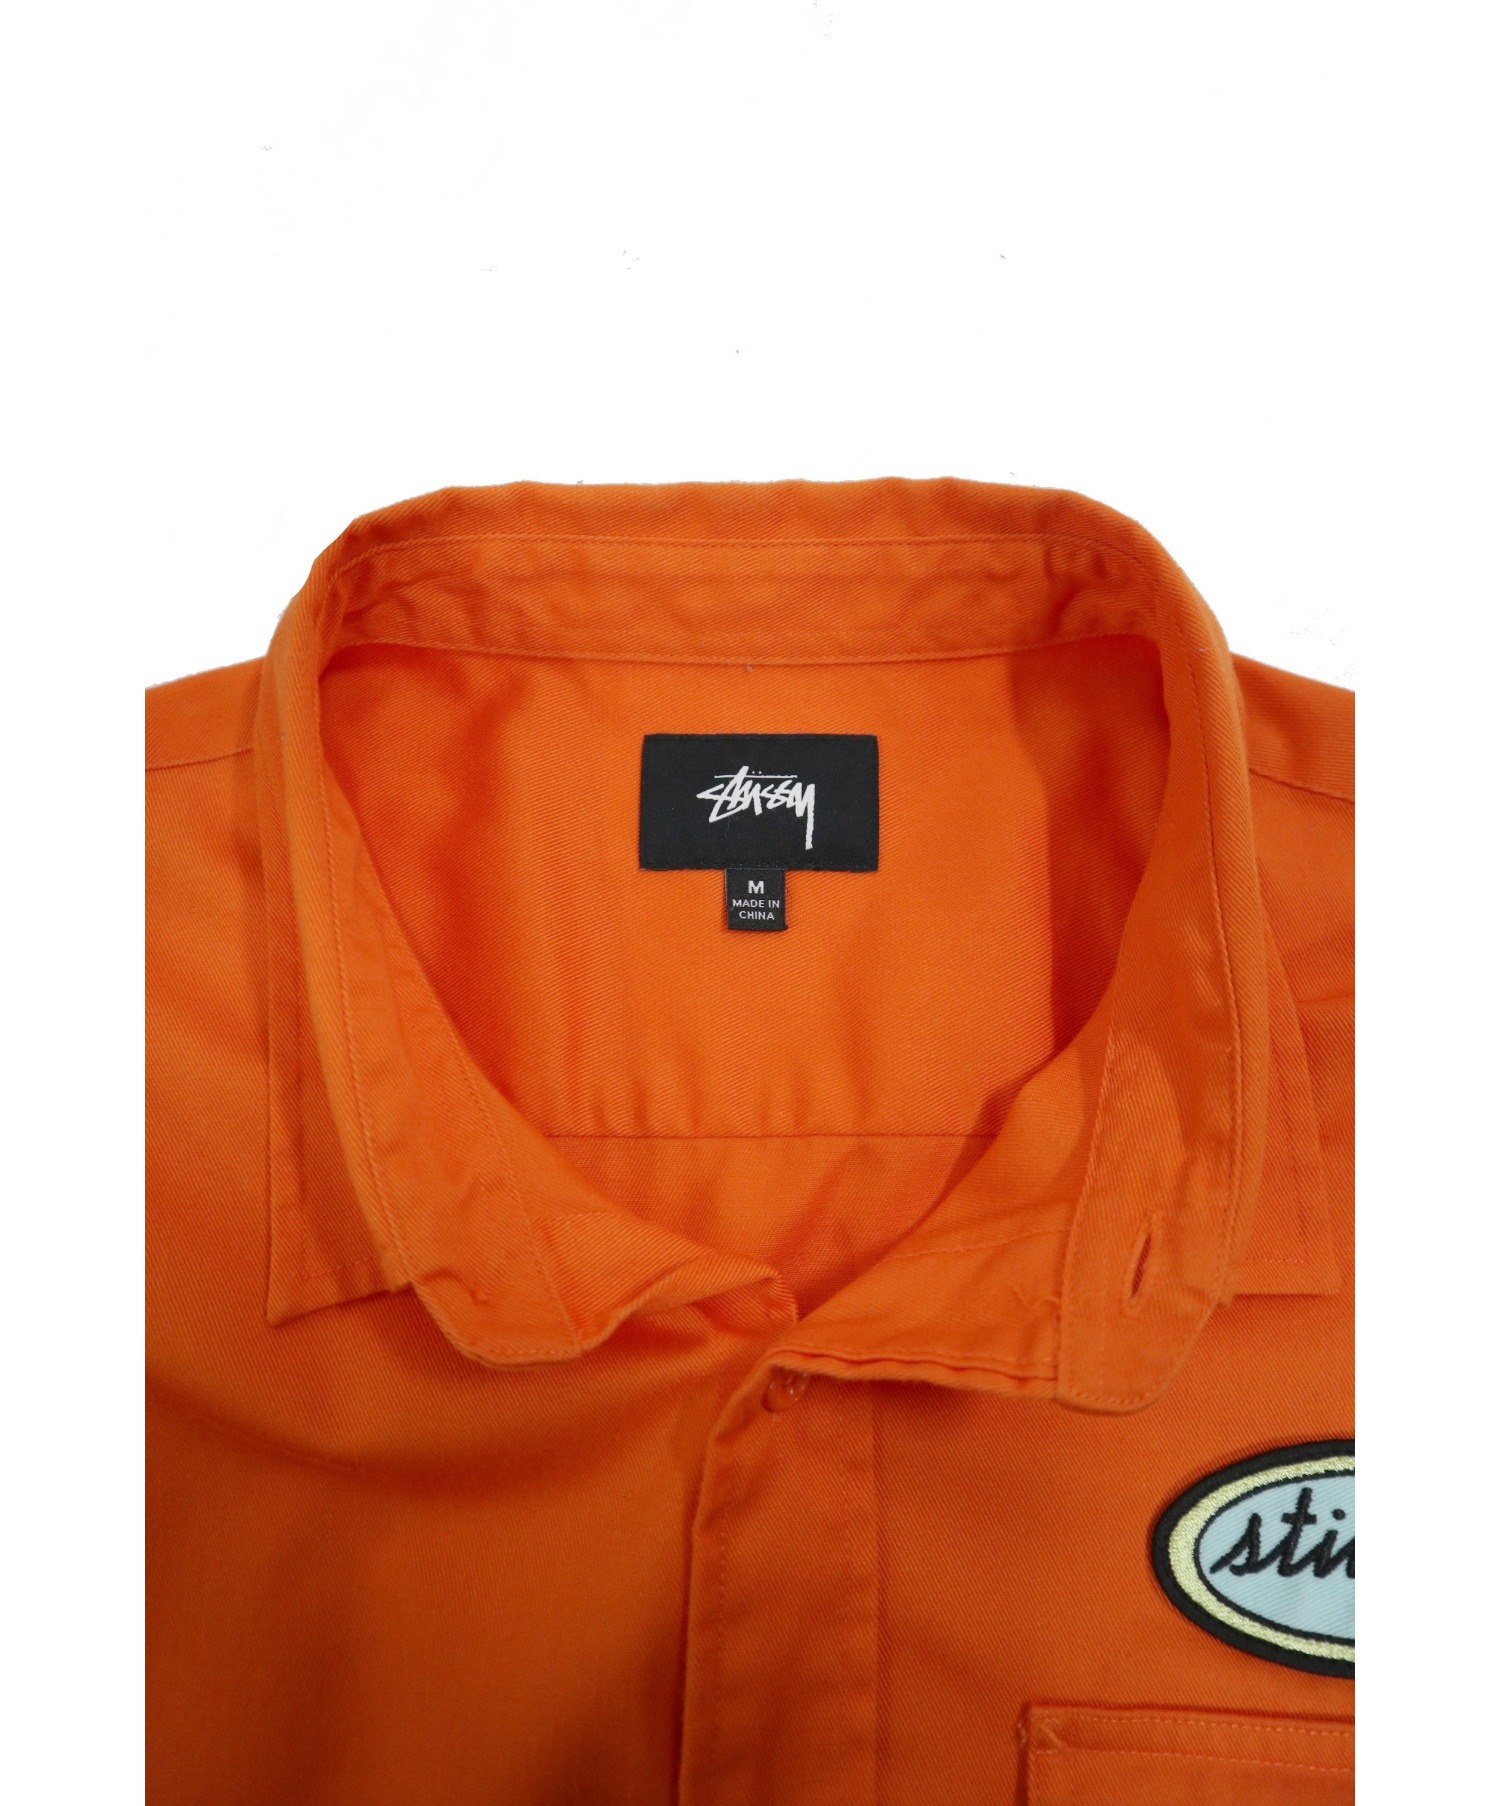 stussy (ステューシー) 半袖ワッペンワークシャツ オレンジ サイズ:M